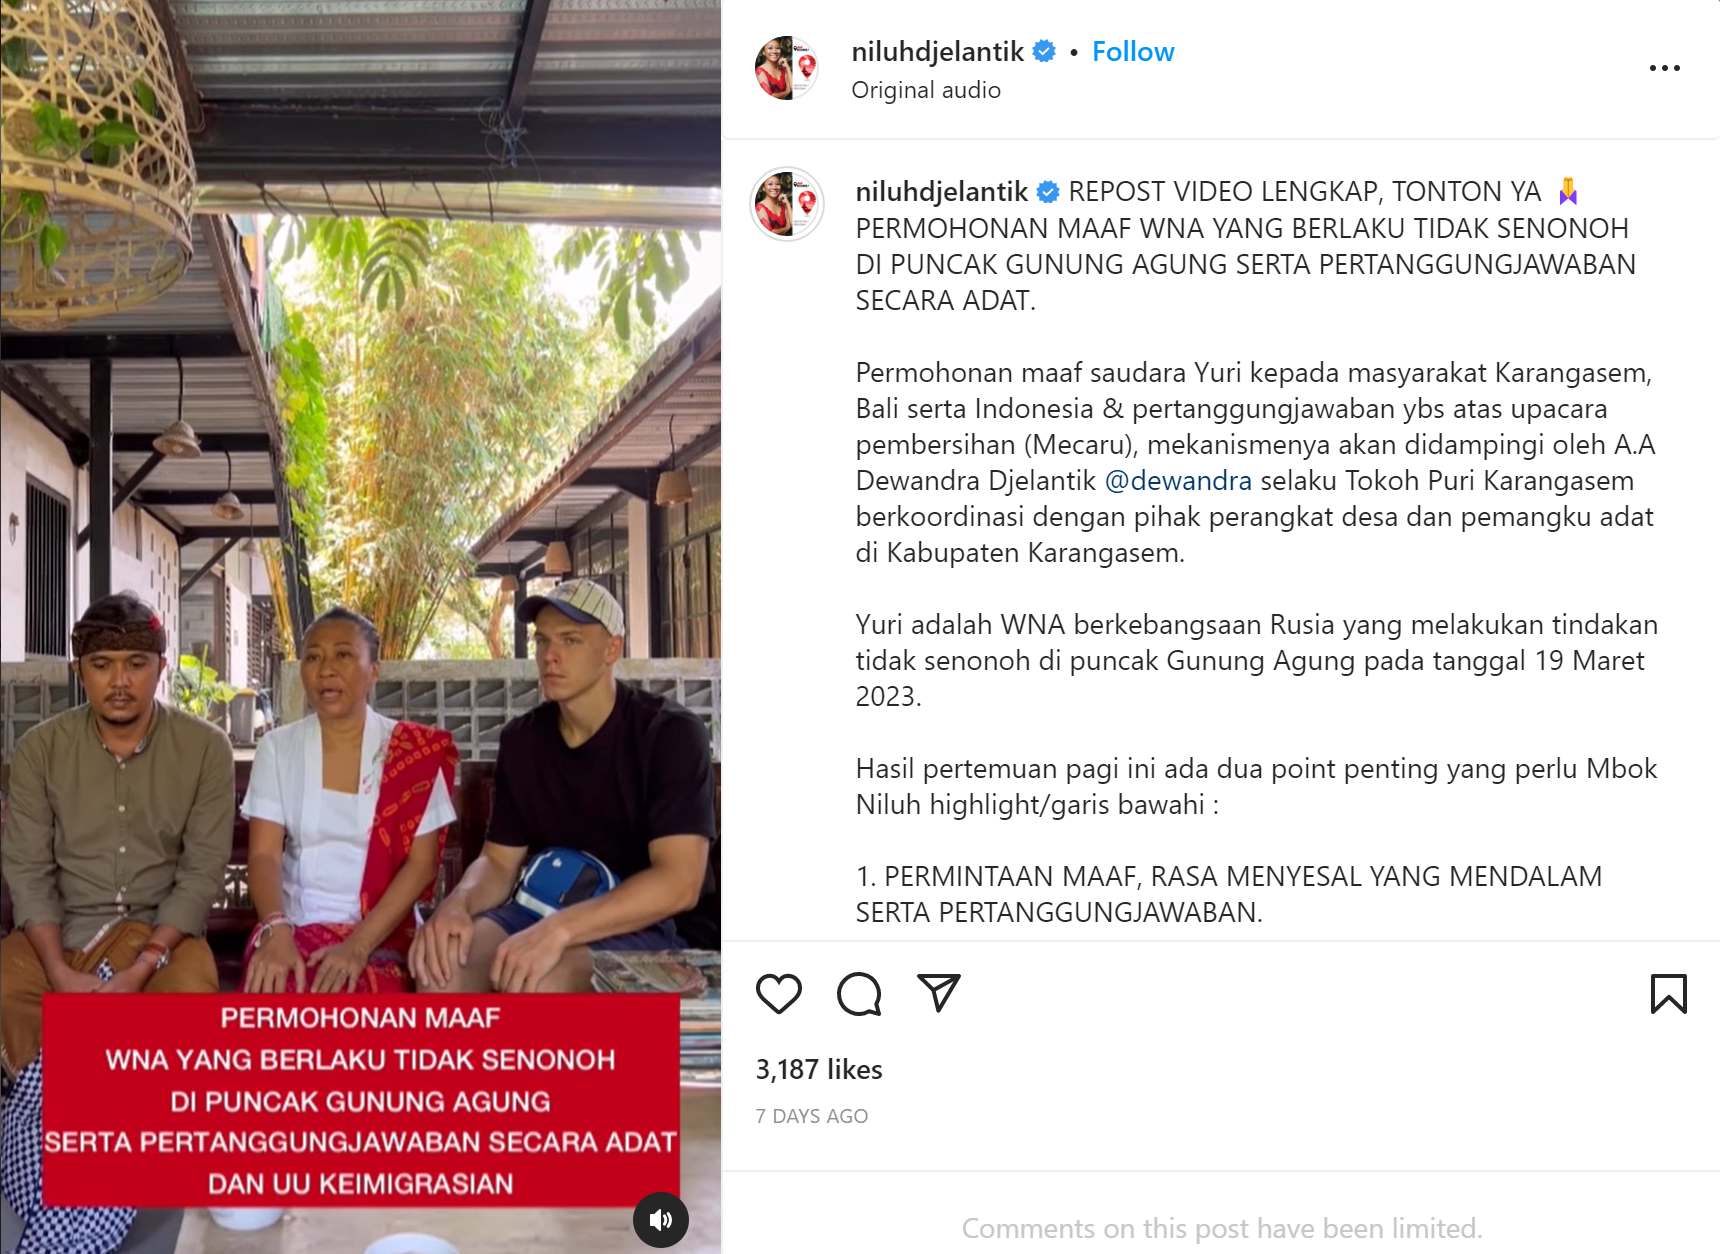 Turis Rusia menghadapi deportasi dari Indonesia setelah posting Foto Tak pantas saat di Bali